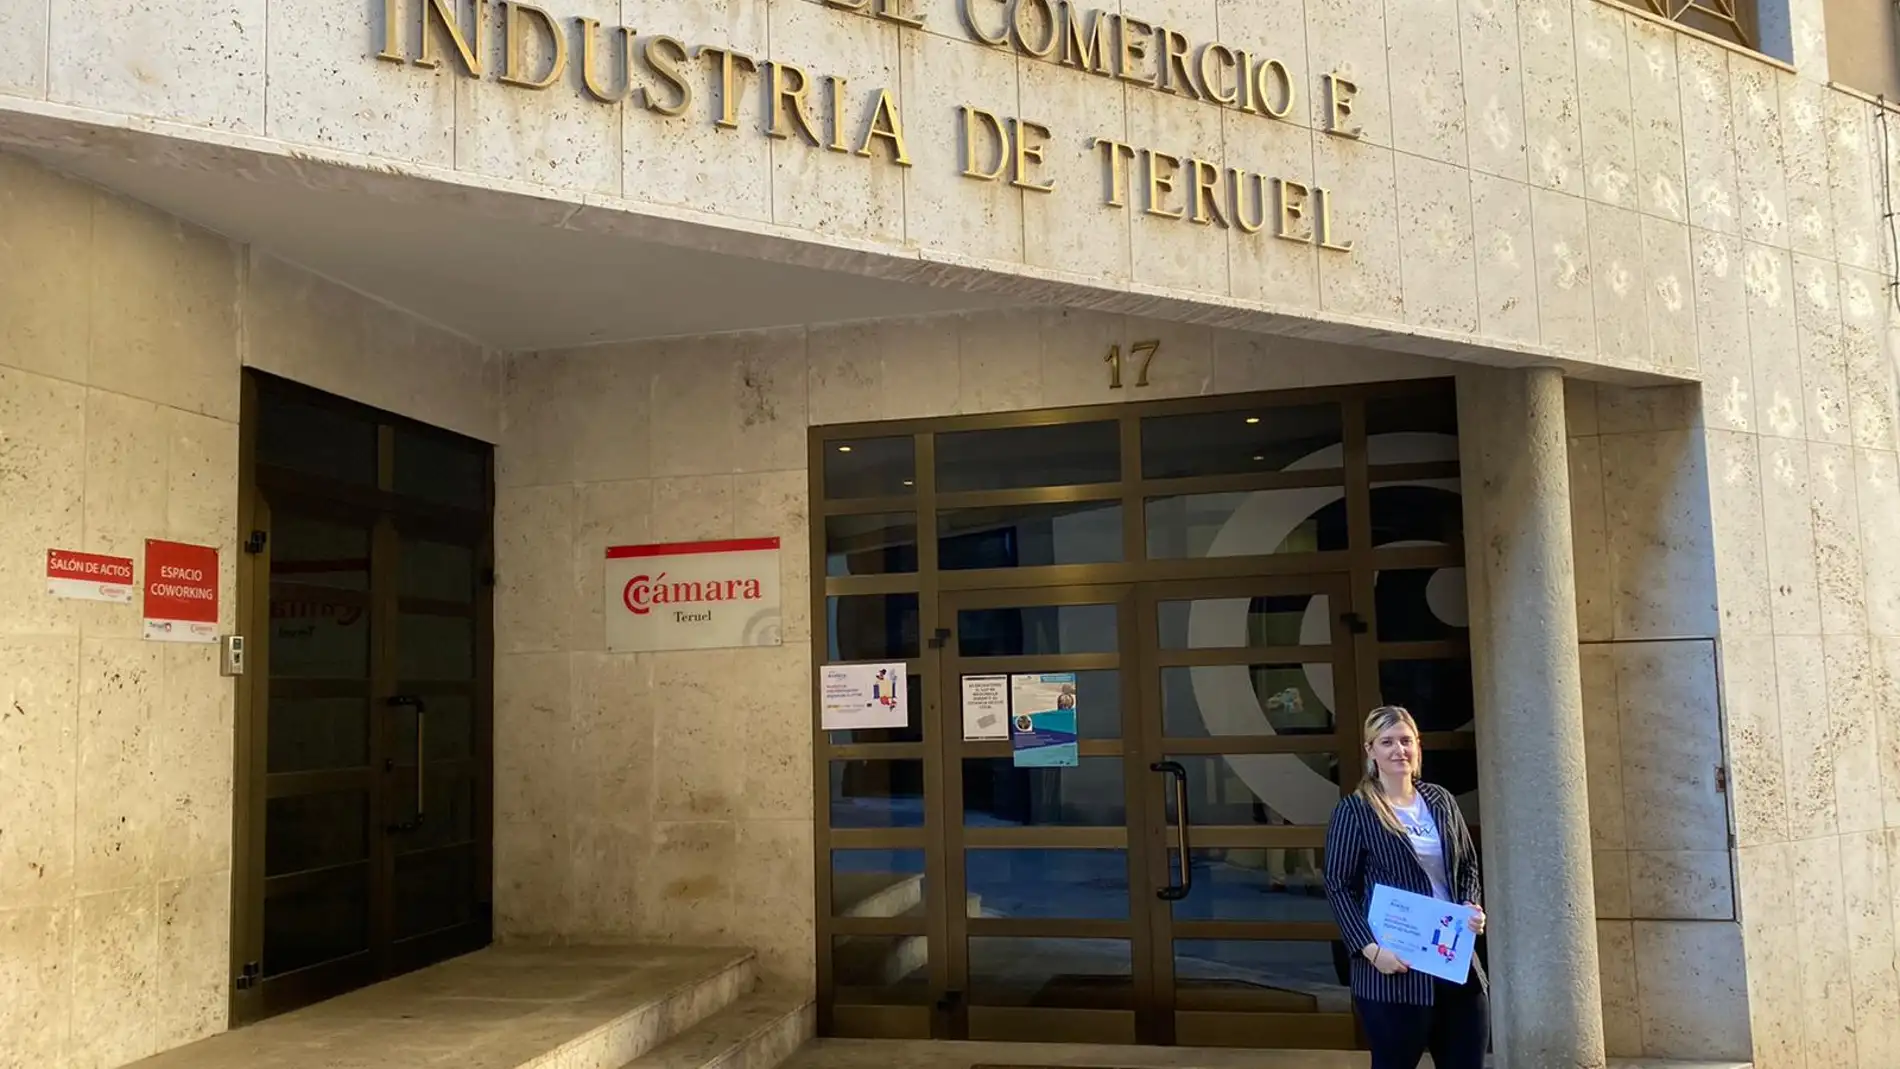 Las oficinas se ubican en las Cámaras de Comercio de Teruel y Alcañiz